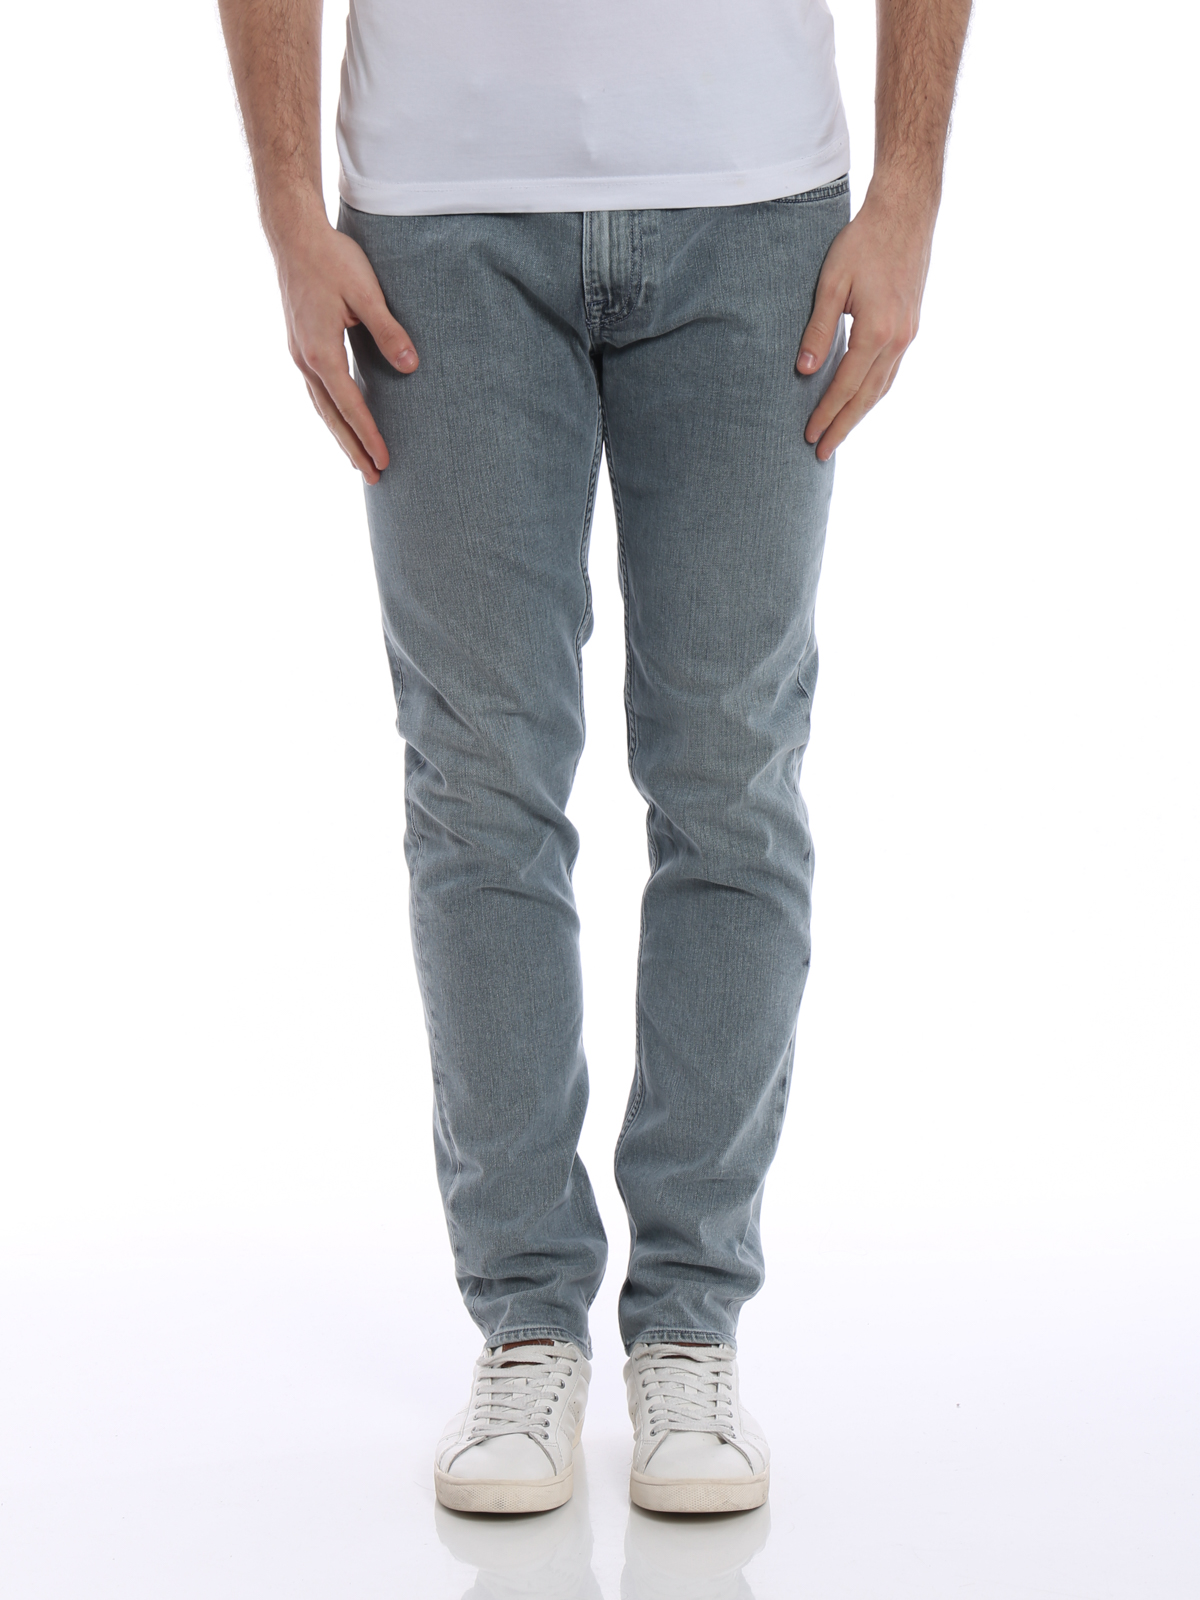 stone island grey skinny jeans